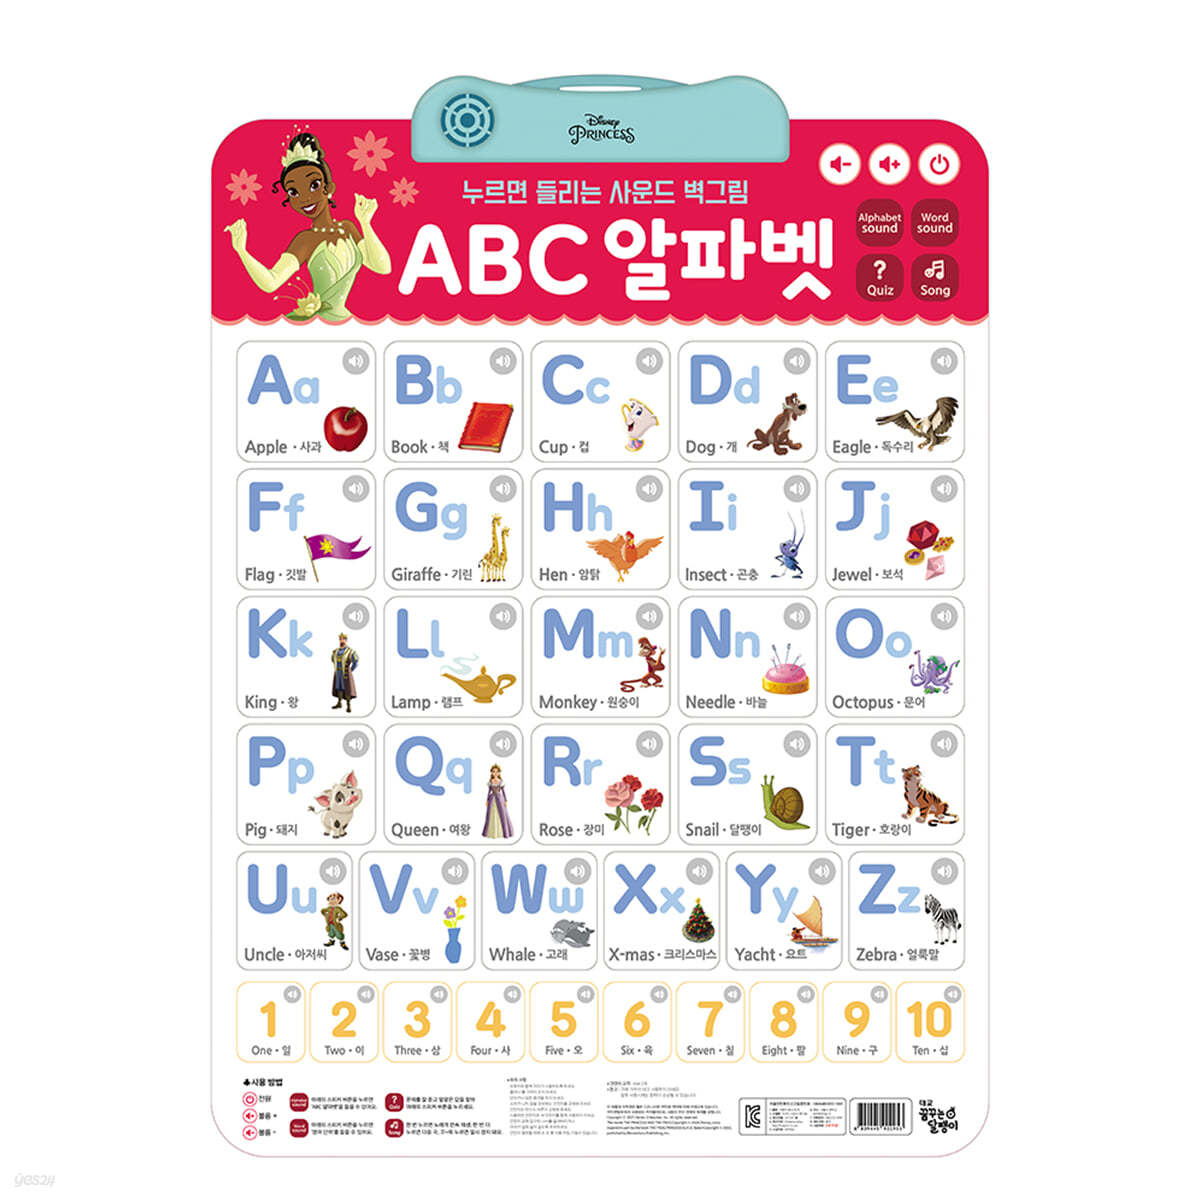 디즈니 프린세스 누르면 들리는 사운드 벽그림 : ABC 알파벳